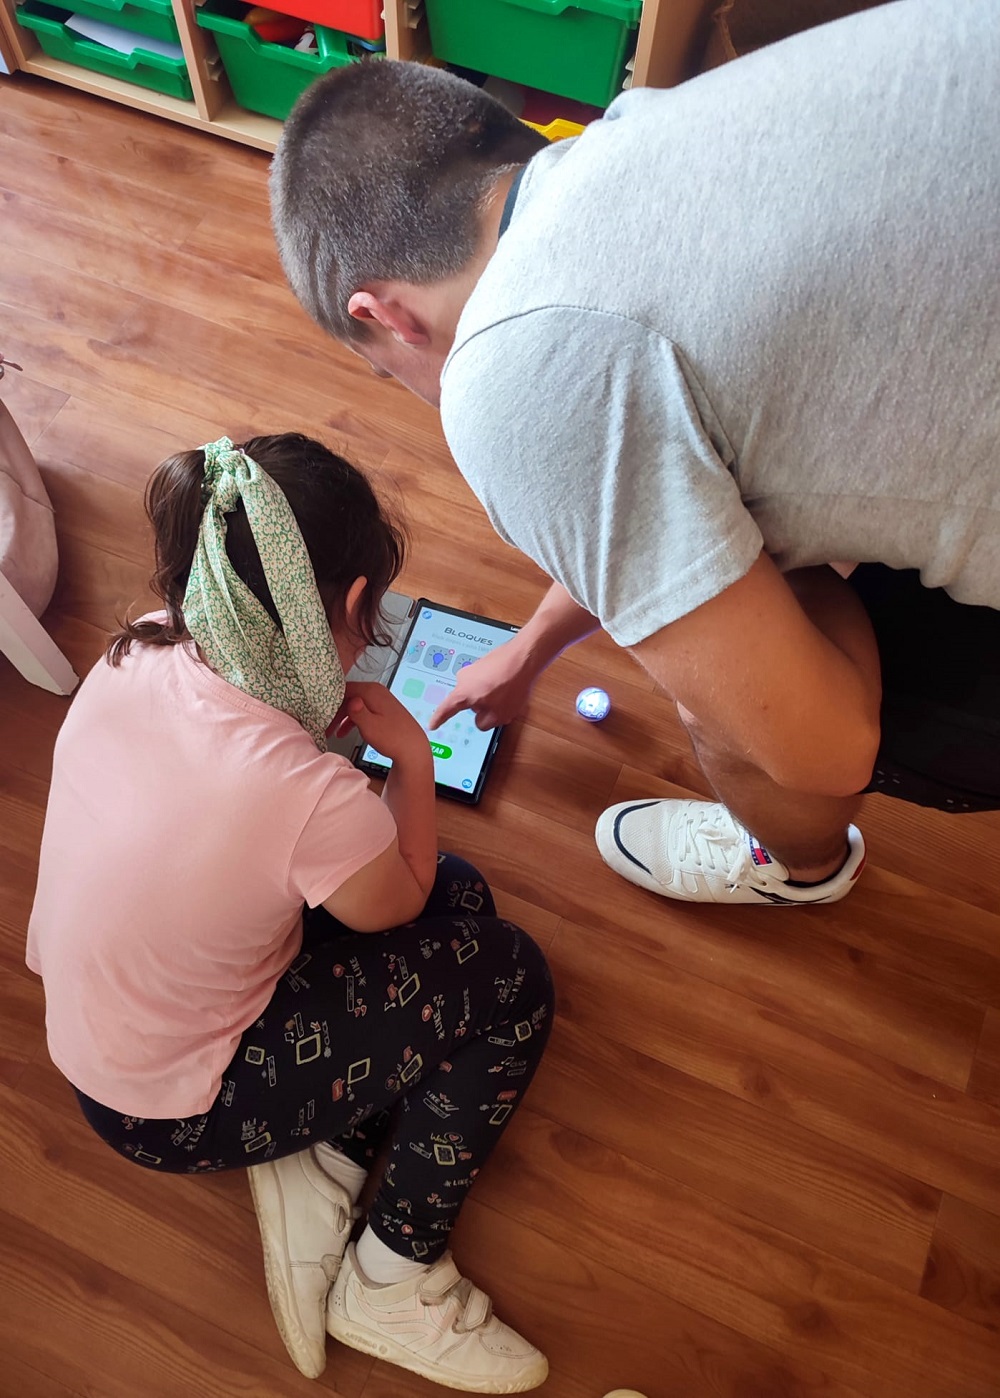 Vemos a 1 niña y 1 niño tocando una tablet para jugar y dar órdenes a la Sphero